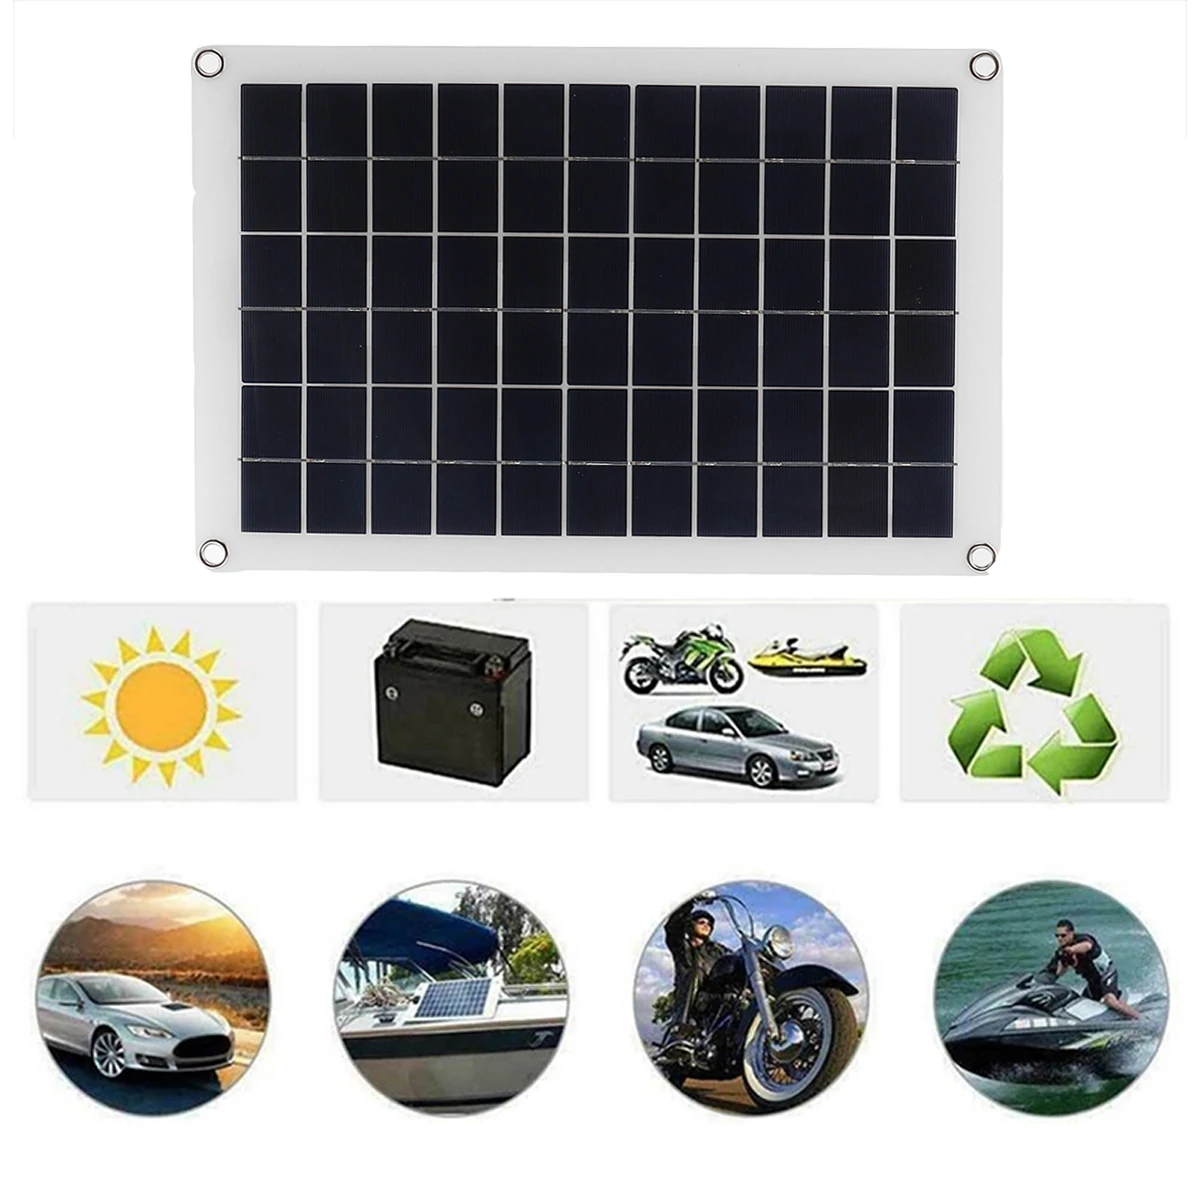 Find 20W 12V/5V Polycrystalline Solar Panel Kit Battery Charger Portable Solar Panel for Car Boat Van for Sale on Gipsybee.com